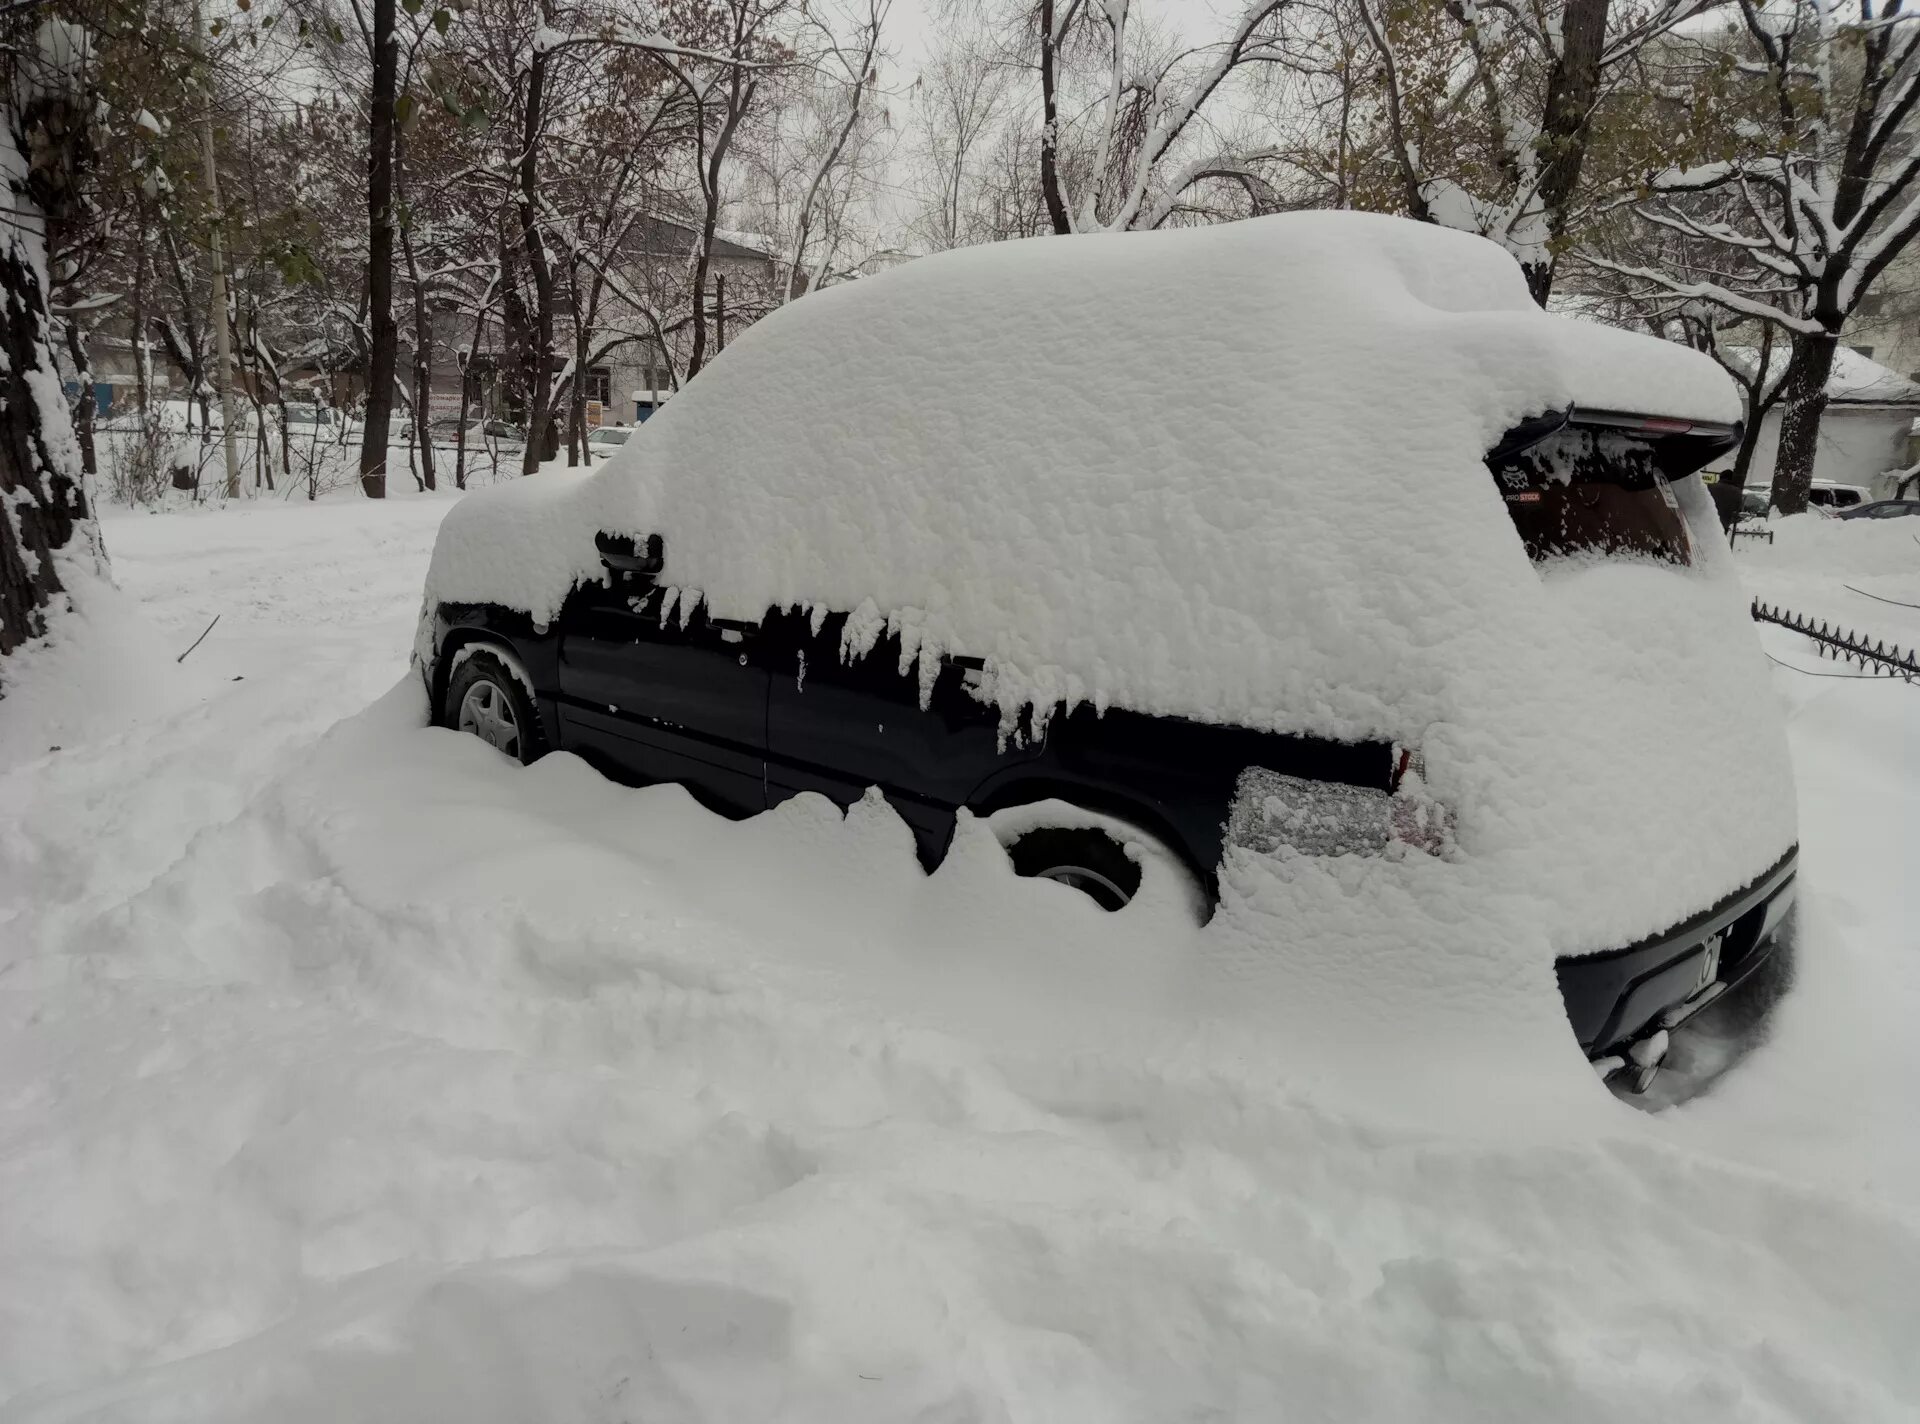 Машина завалена снегом. Снеговая машина. Машина в сугробе. Машина в снегу. Машина снежка